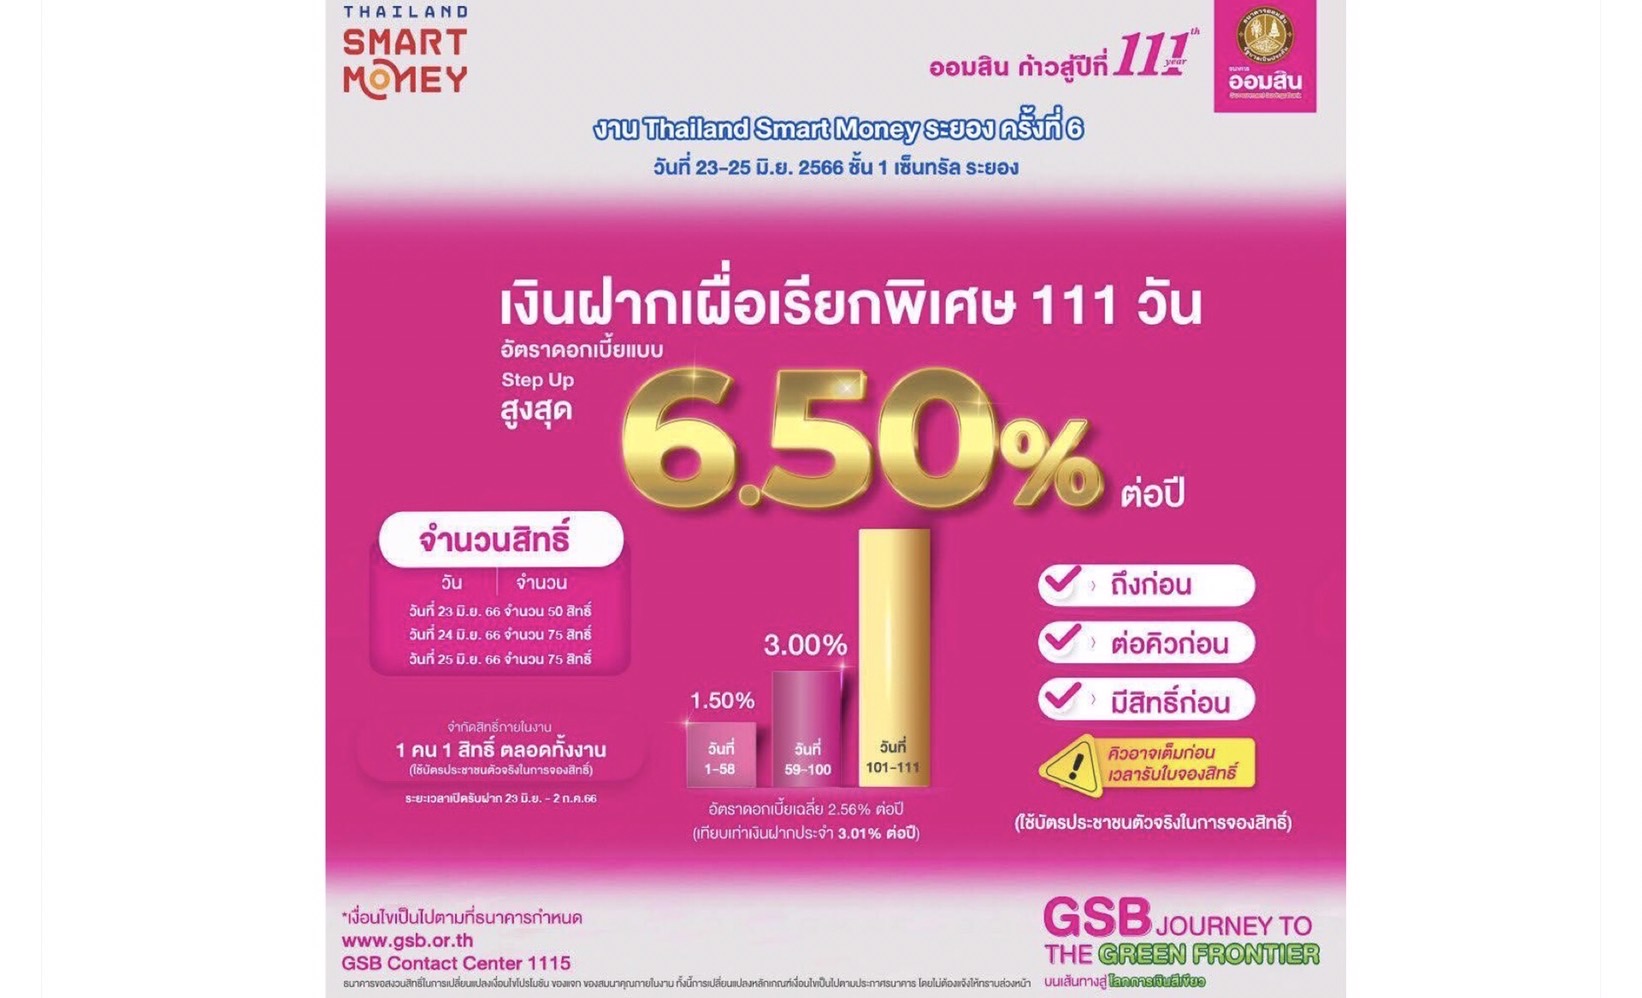 ออมสินส่งโปรเด่น งาน Thailand Smart Money ระยอง ครั้งที่ 6ชูเงินฝาก 111 วัน ดอกเบี้ยสูงสุด6.50% ต่อปี สินเชื่อบ้านดอกเบี้ยคงที่ 1.11% นาน 3 เดือน